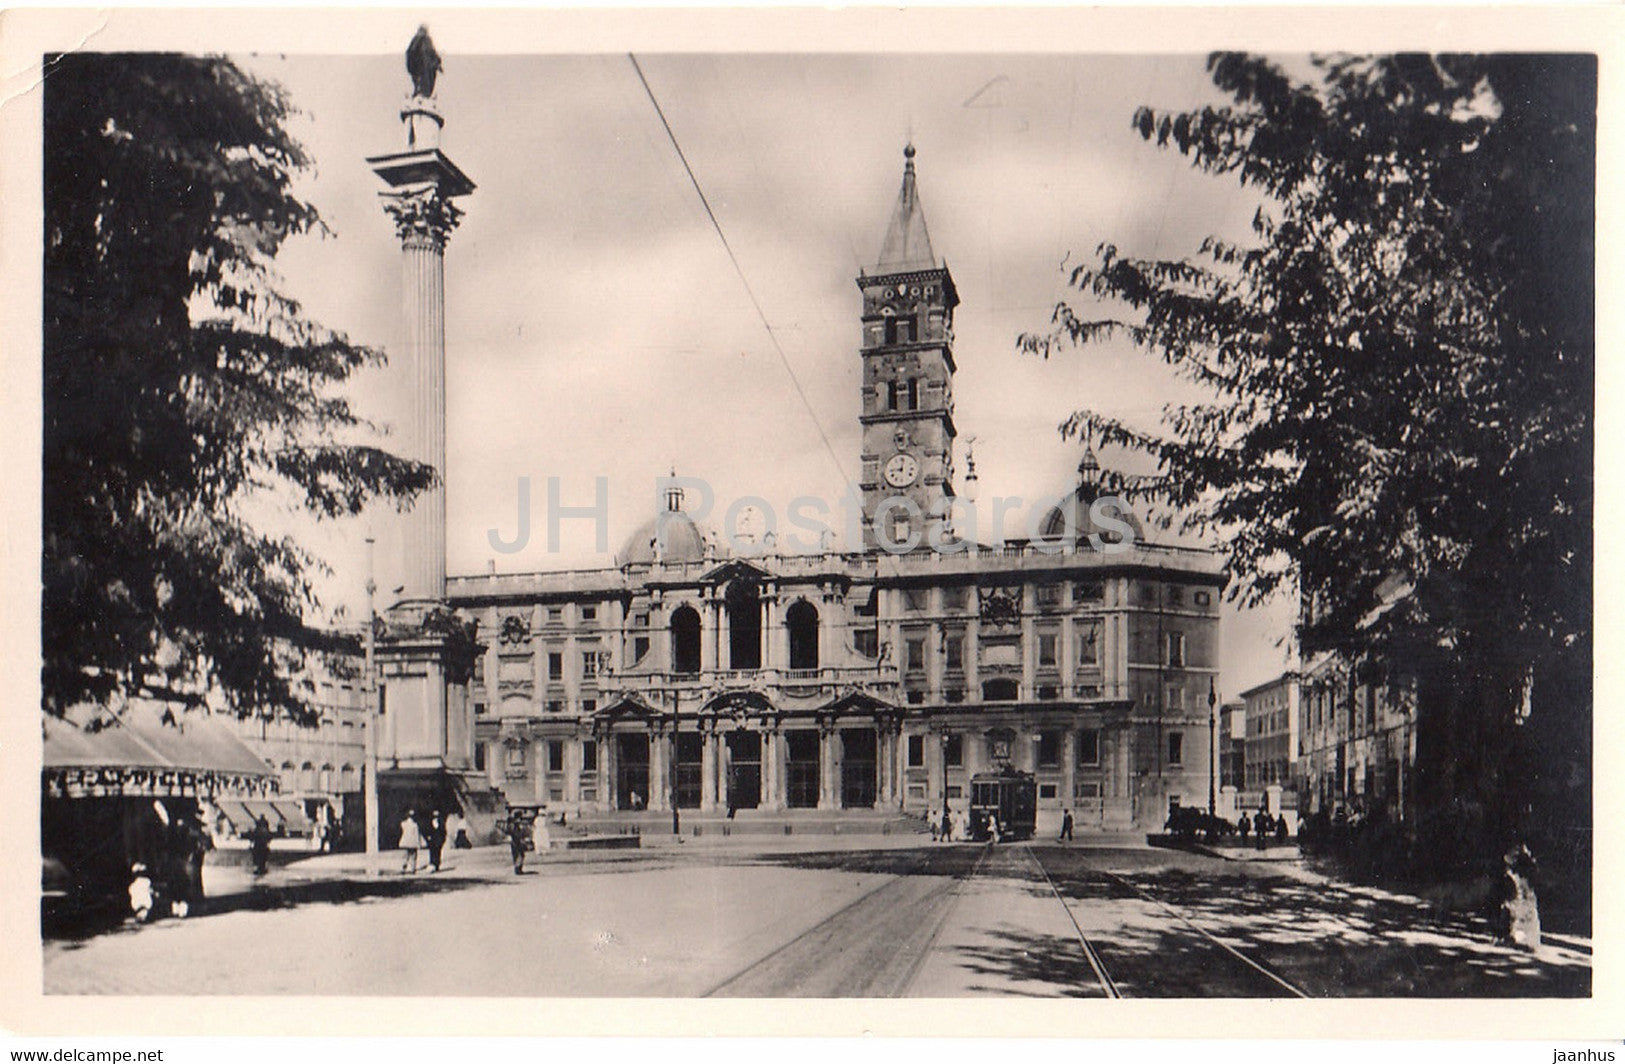 Roma - Rome - Basilica di S Maria Maggiore - tram - old postcard - Italy - unused - JH Postcards